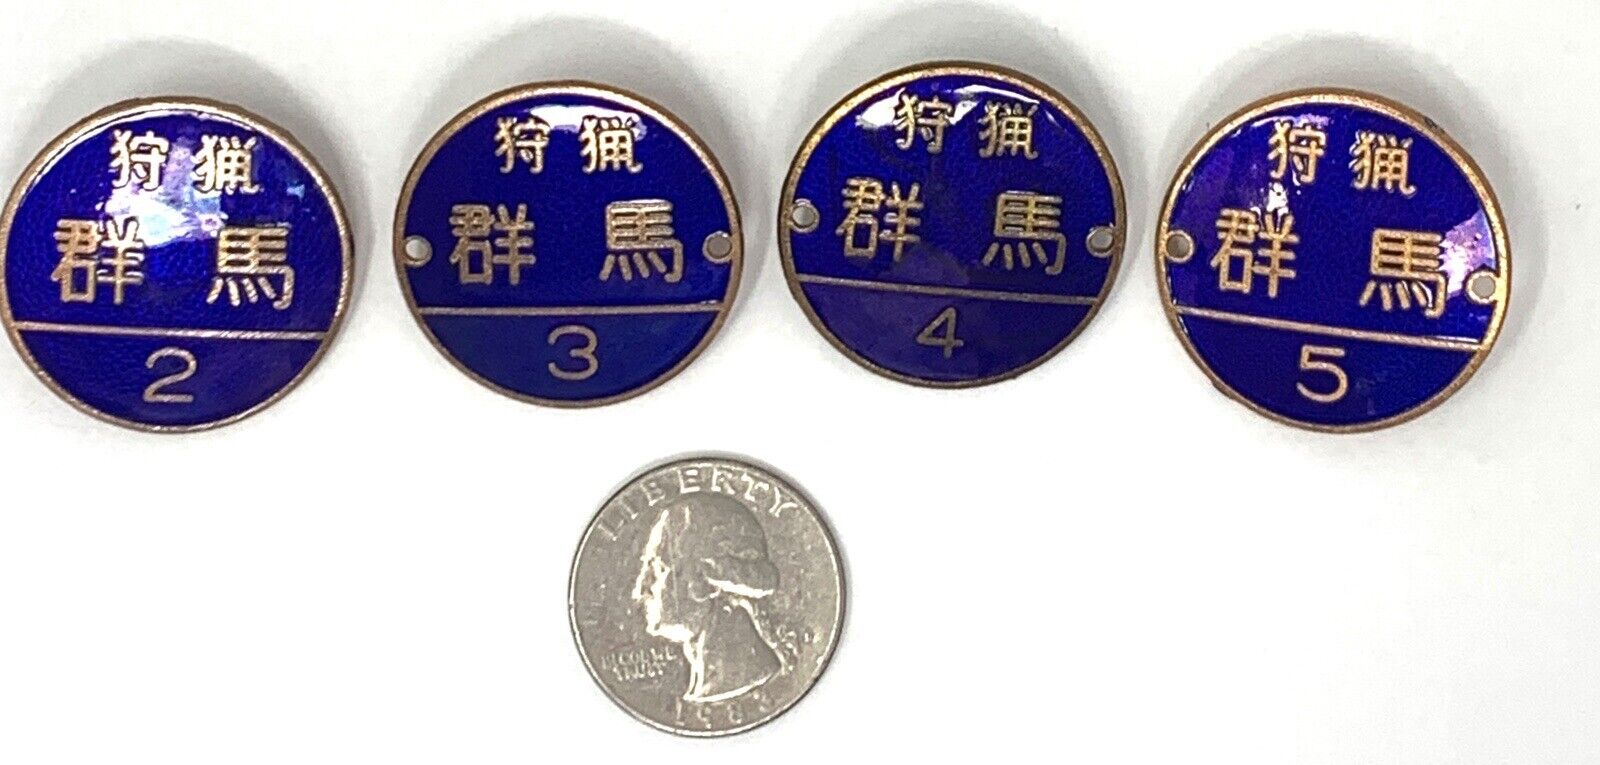 4 1990 - 1993 Japanese Hunting License Badge Set Gunma Japan Dark Blue Enamel